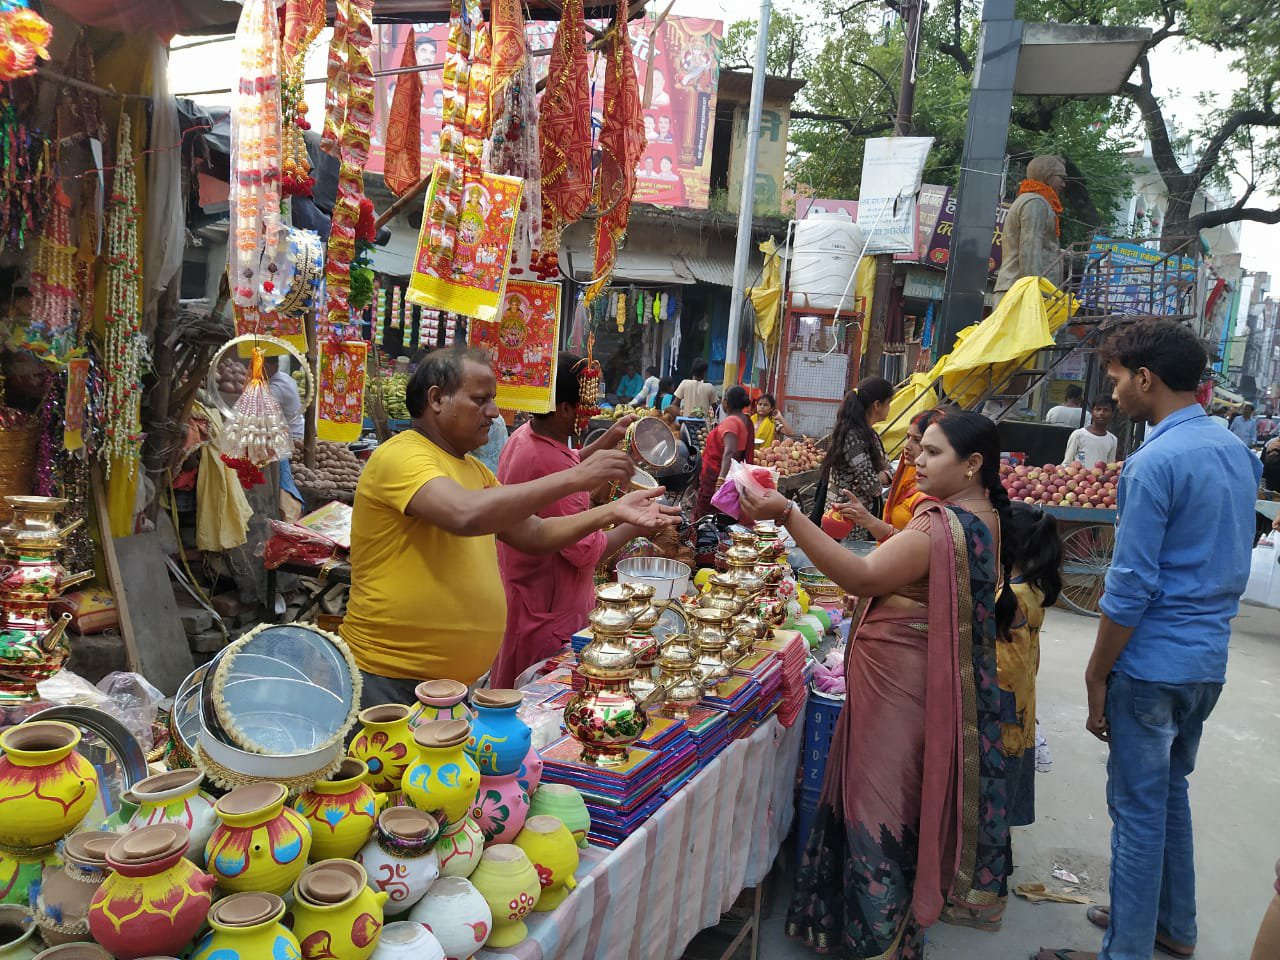 करवा चौथ पर्व को लेकर सजी दुकानें, दुकानों पर खरीदारी के लिए दिखने लगी है महिलाओं की भीड़ | New India Times